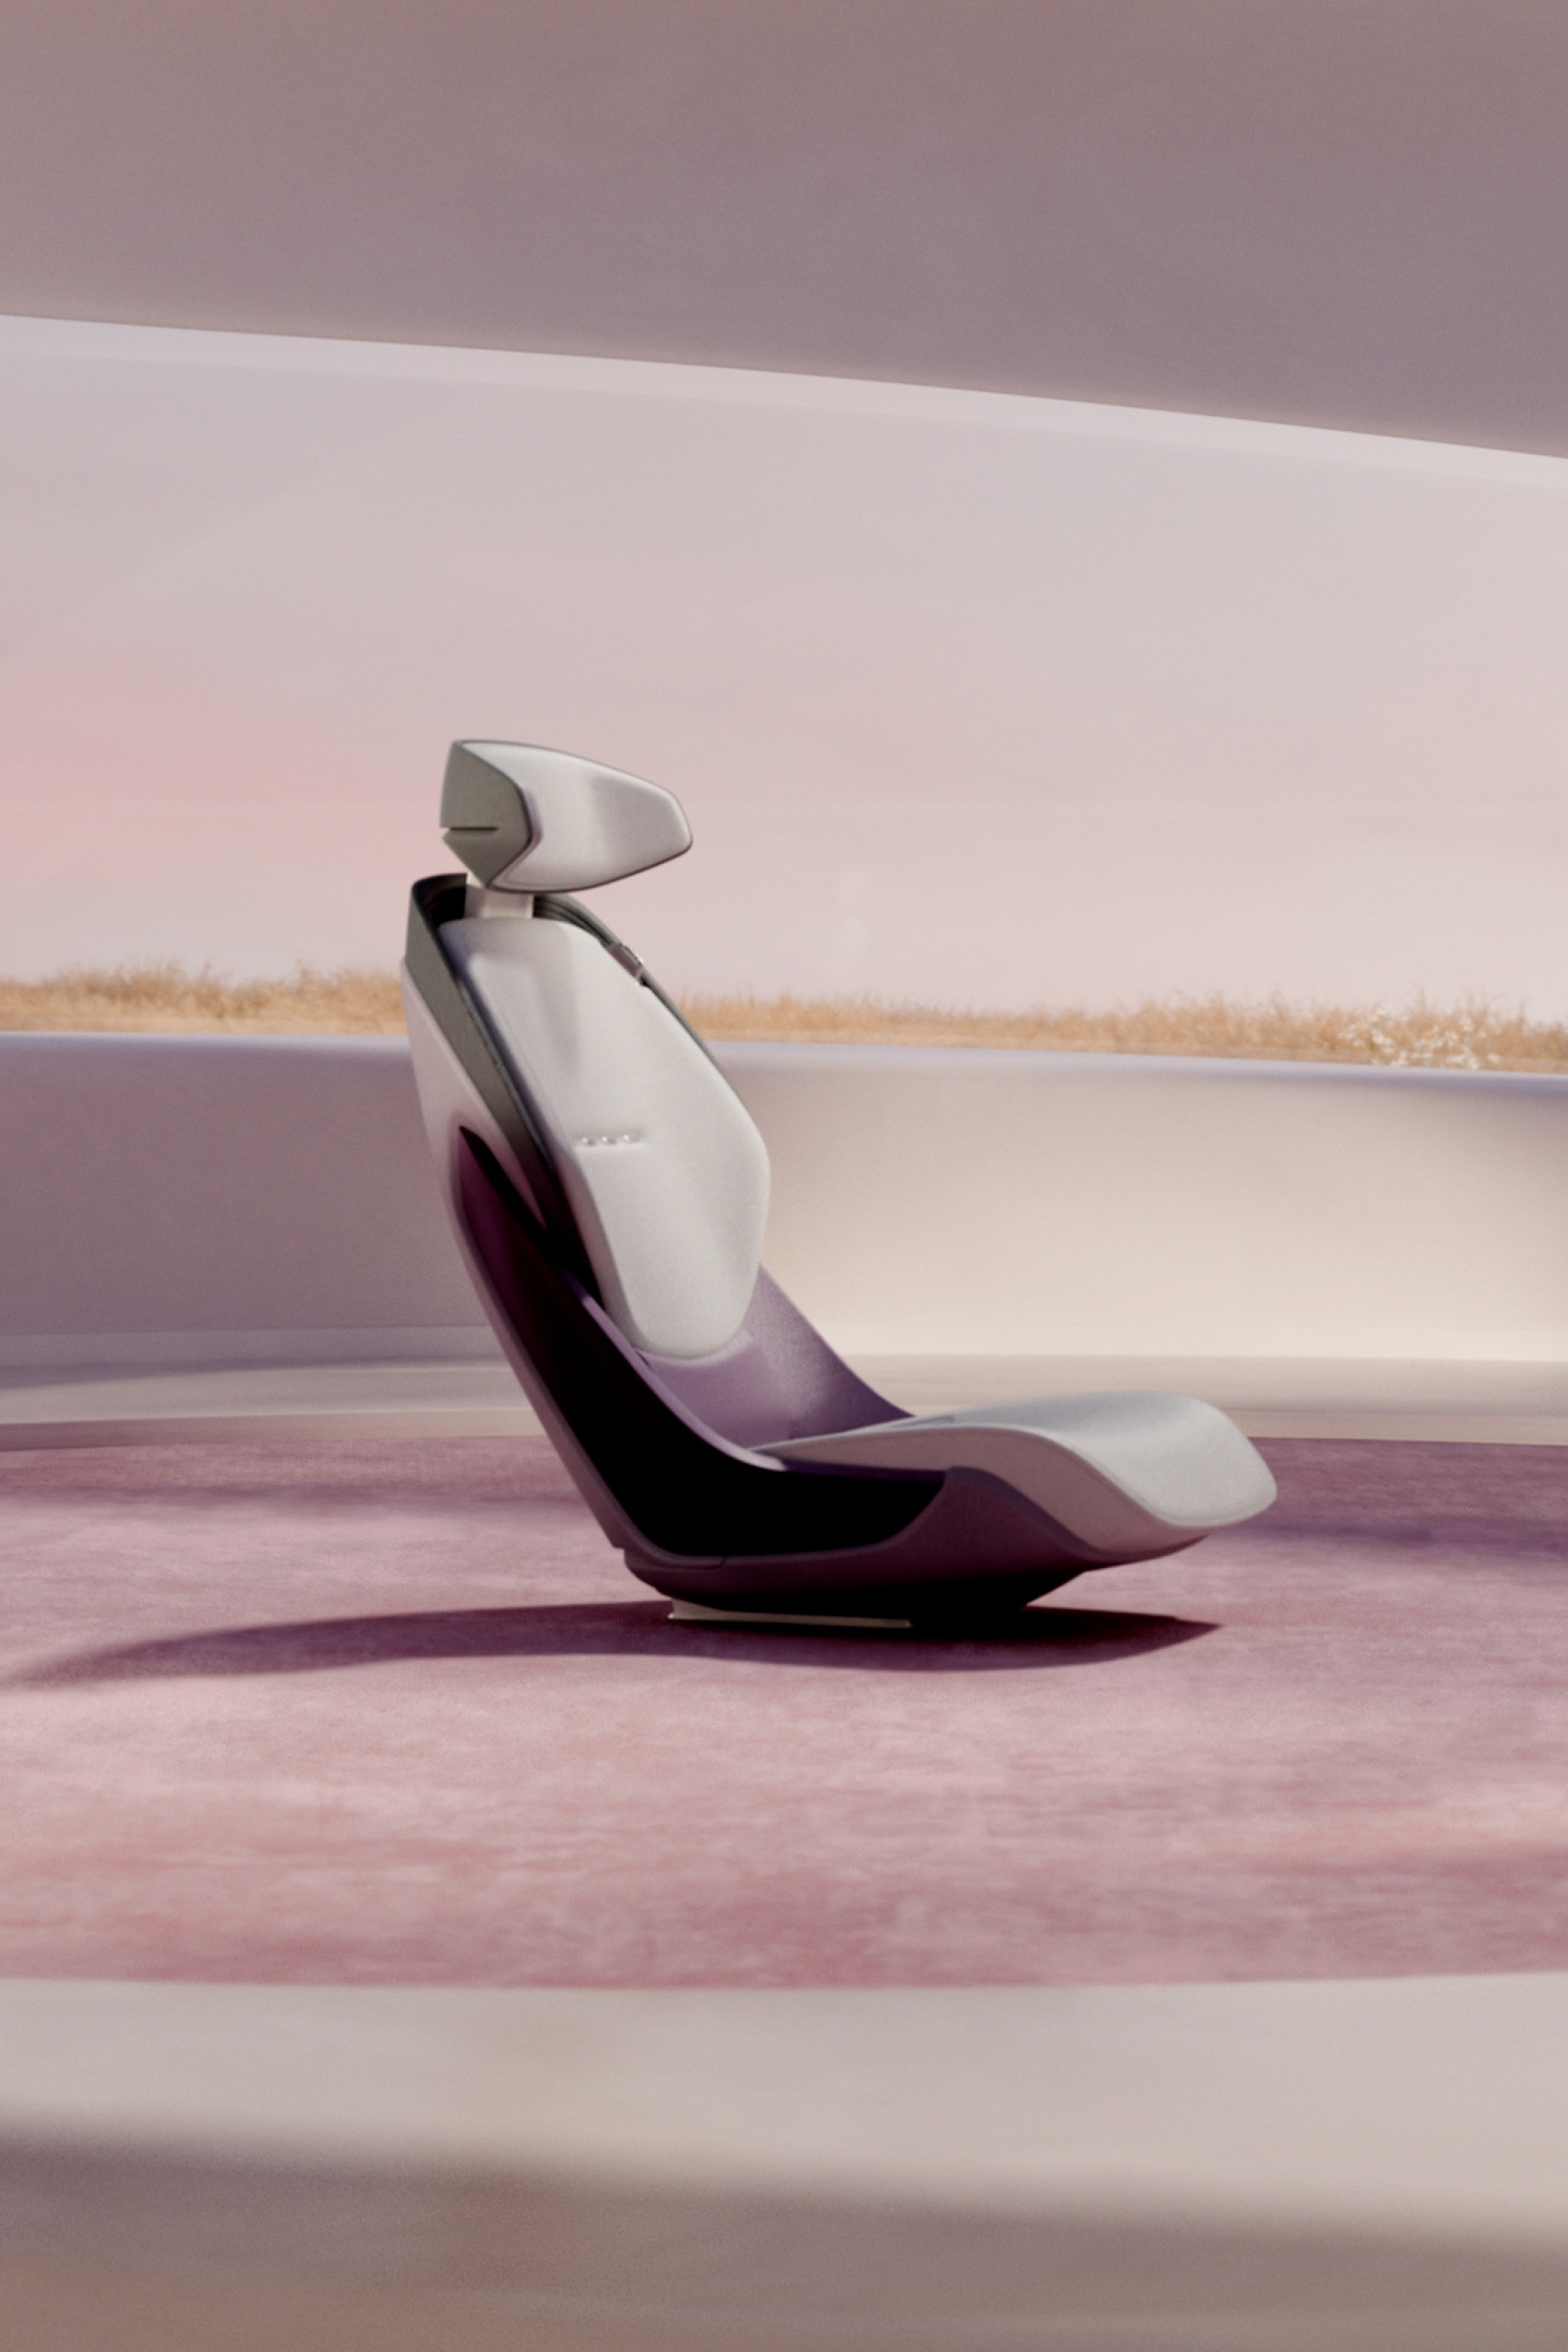  Fotel Audi grandsphere concept pokazano w pozycji pionowej.